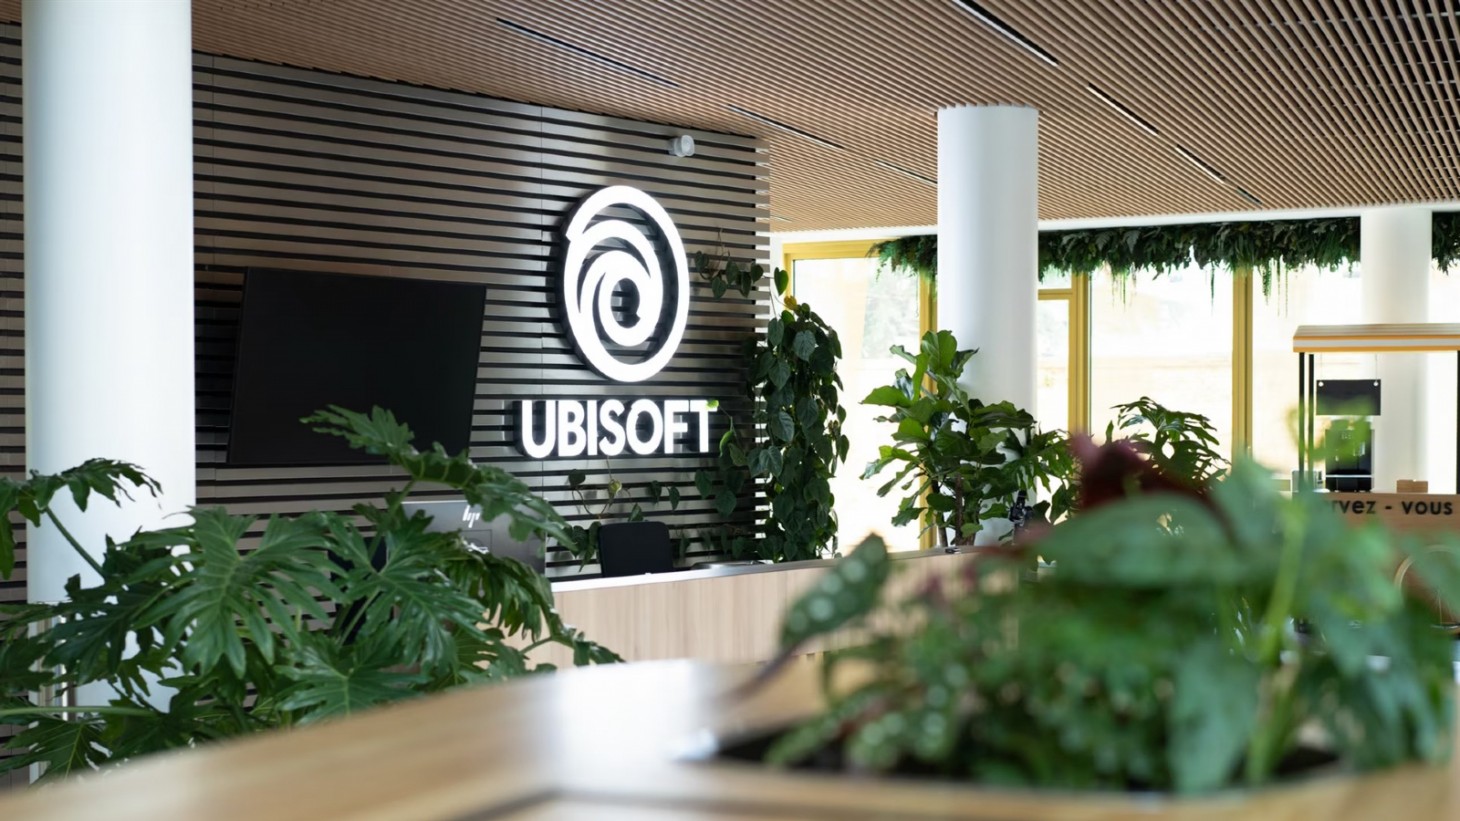 Französische Polizei verhaftet fünf ehemalige Ubisoft-Führungskräfte nach Ermittlungen wegen sexueller Übergriffe und Belästigung